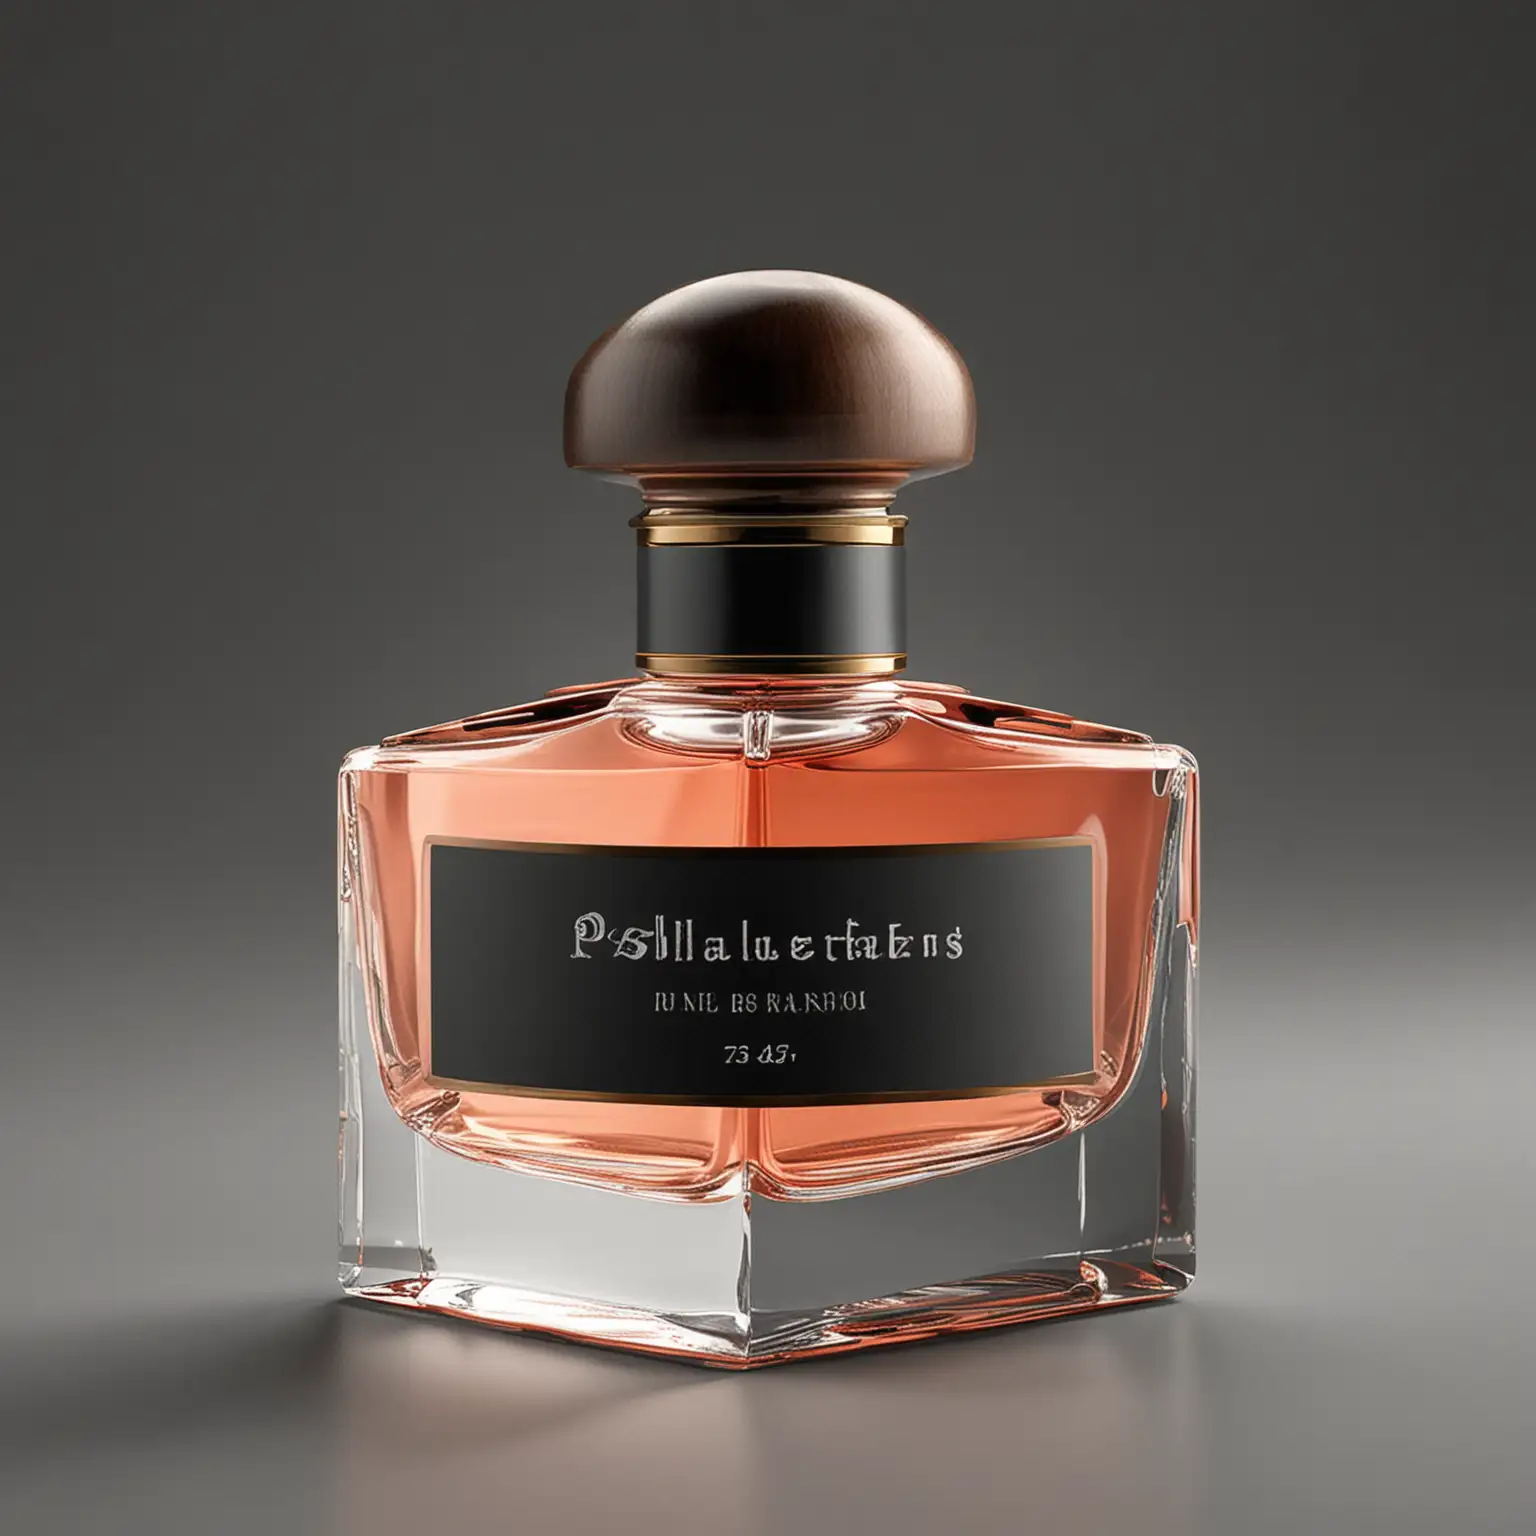 desarrolla una colección de perfumes para caballero , debe ser una imagen minimalista, juvenil y con colores vibrantes, el diseño de la botella debe ser diferente y moderno


